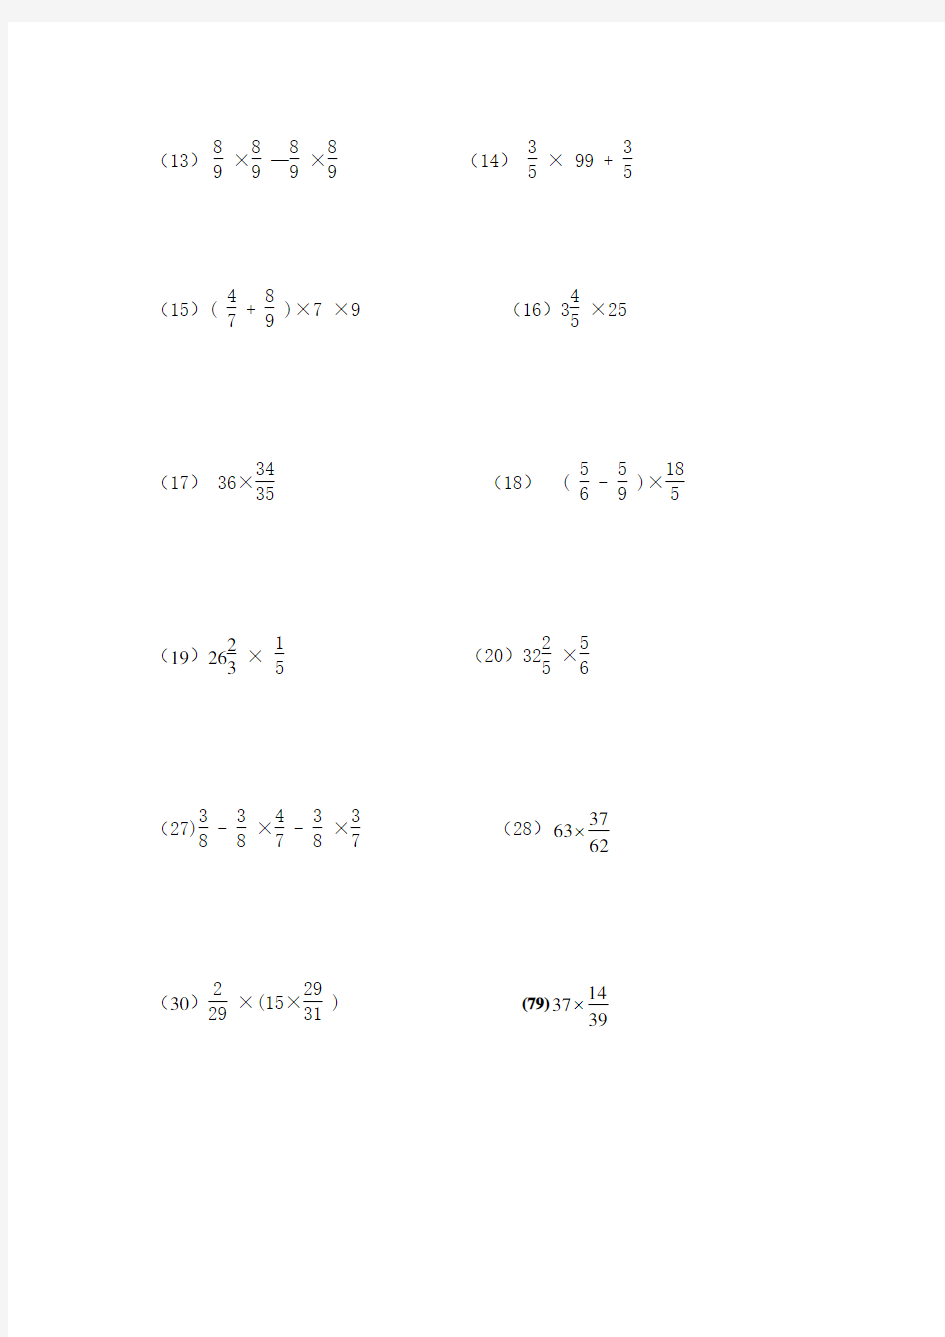 分数乘除法简便运算100题(1)